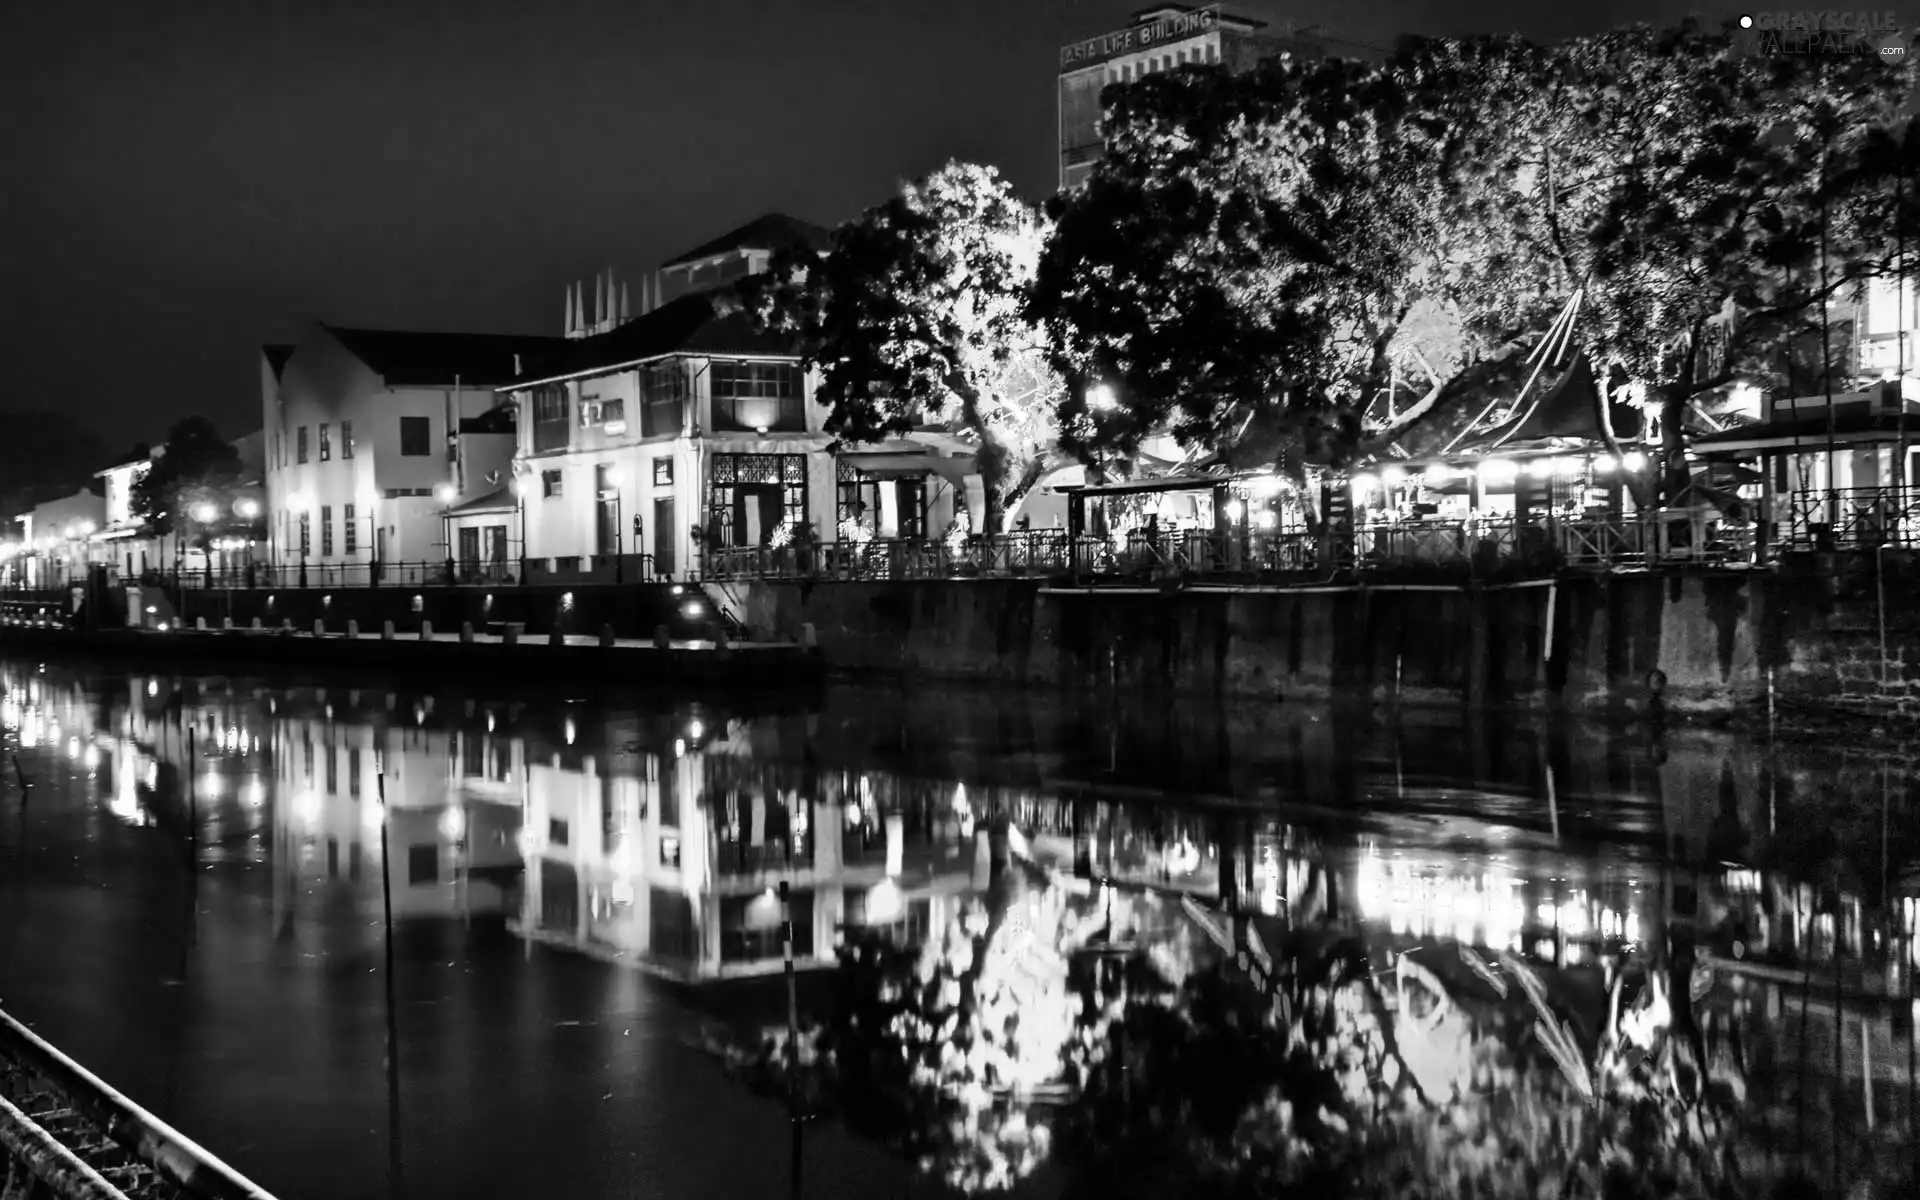 panorama, Malaysia, night, reflection, town, Malacca